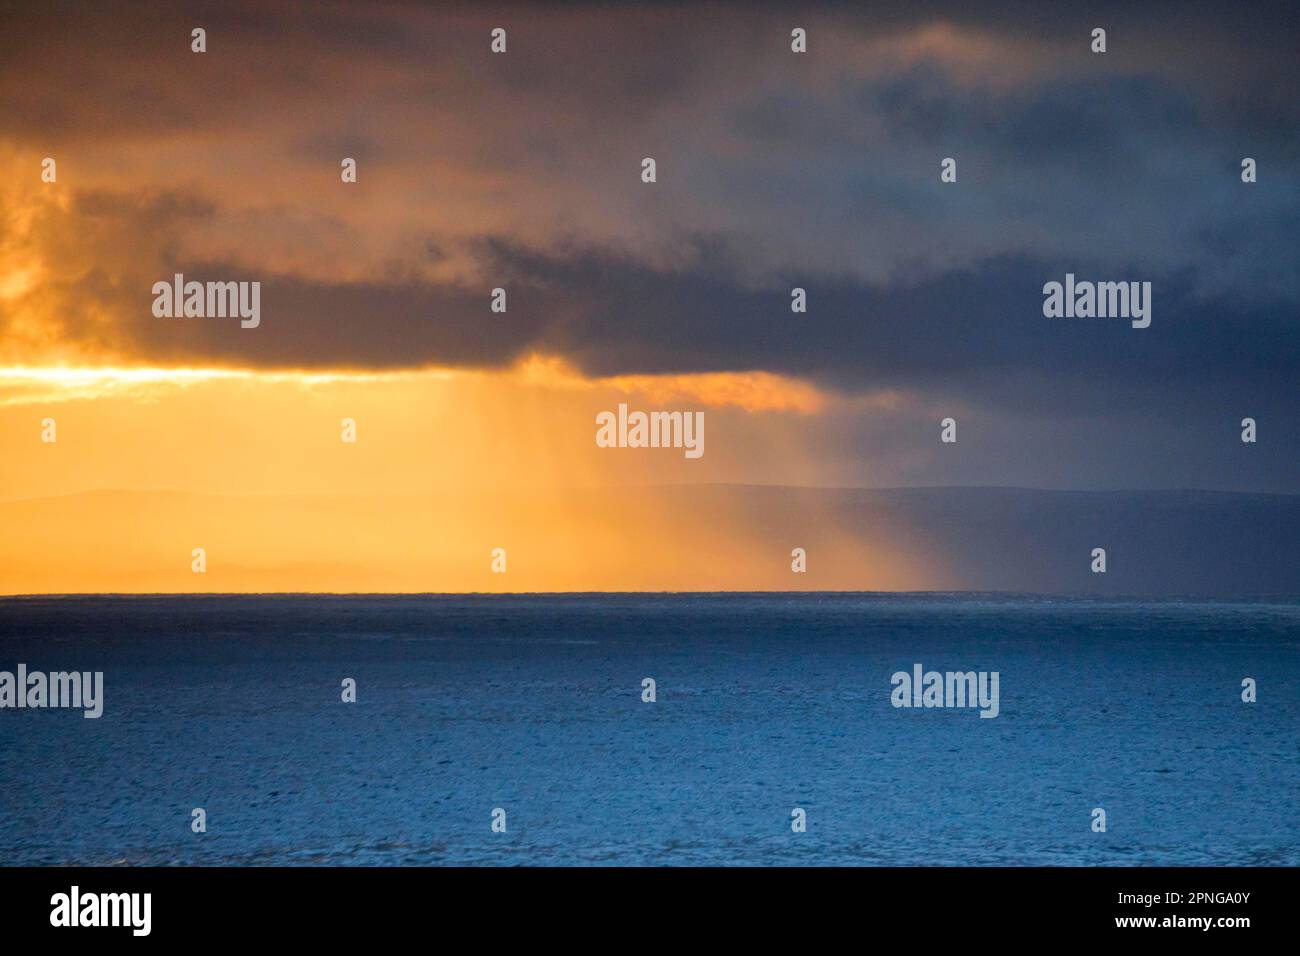 Die Abendsonne bricht durch tief liegende Regenwolken über den Sommerinseln und dem offenen Wasser des blauen Atlantiks an der Westküste Schottlands Stockfoto